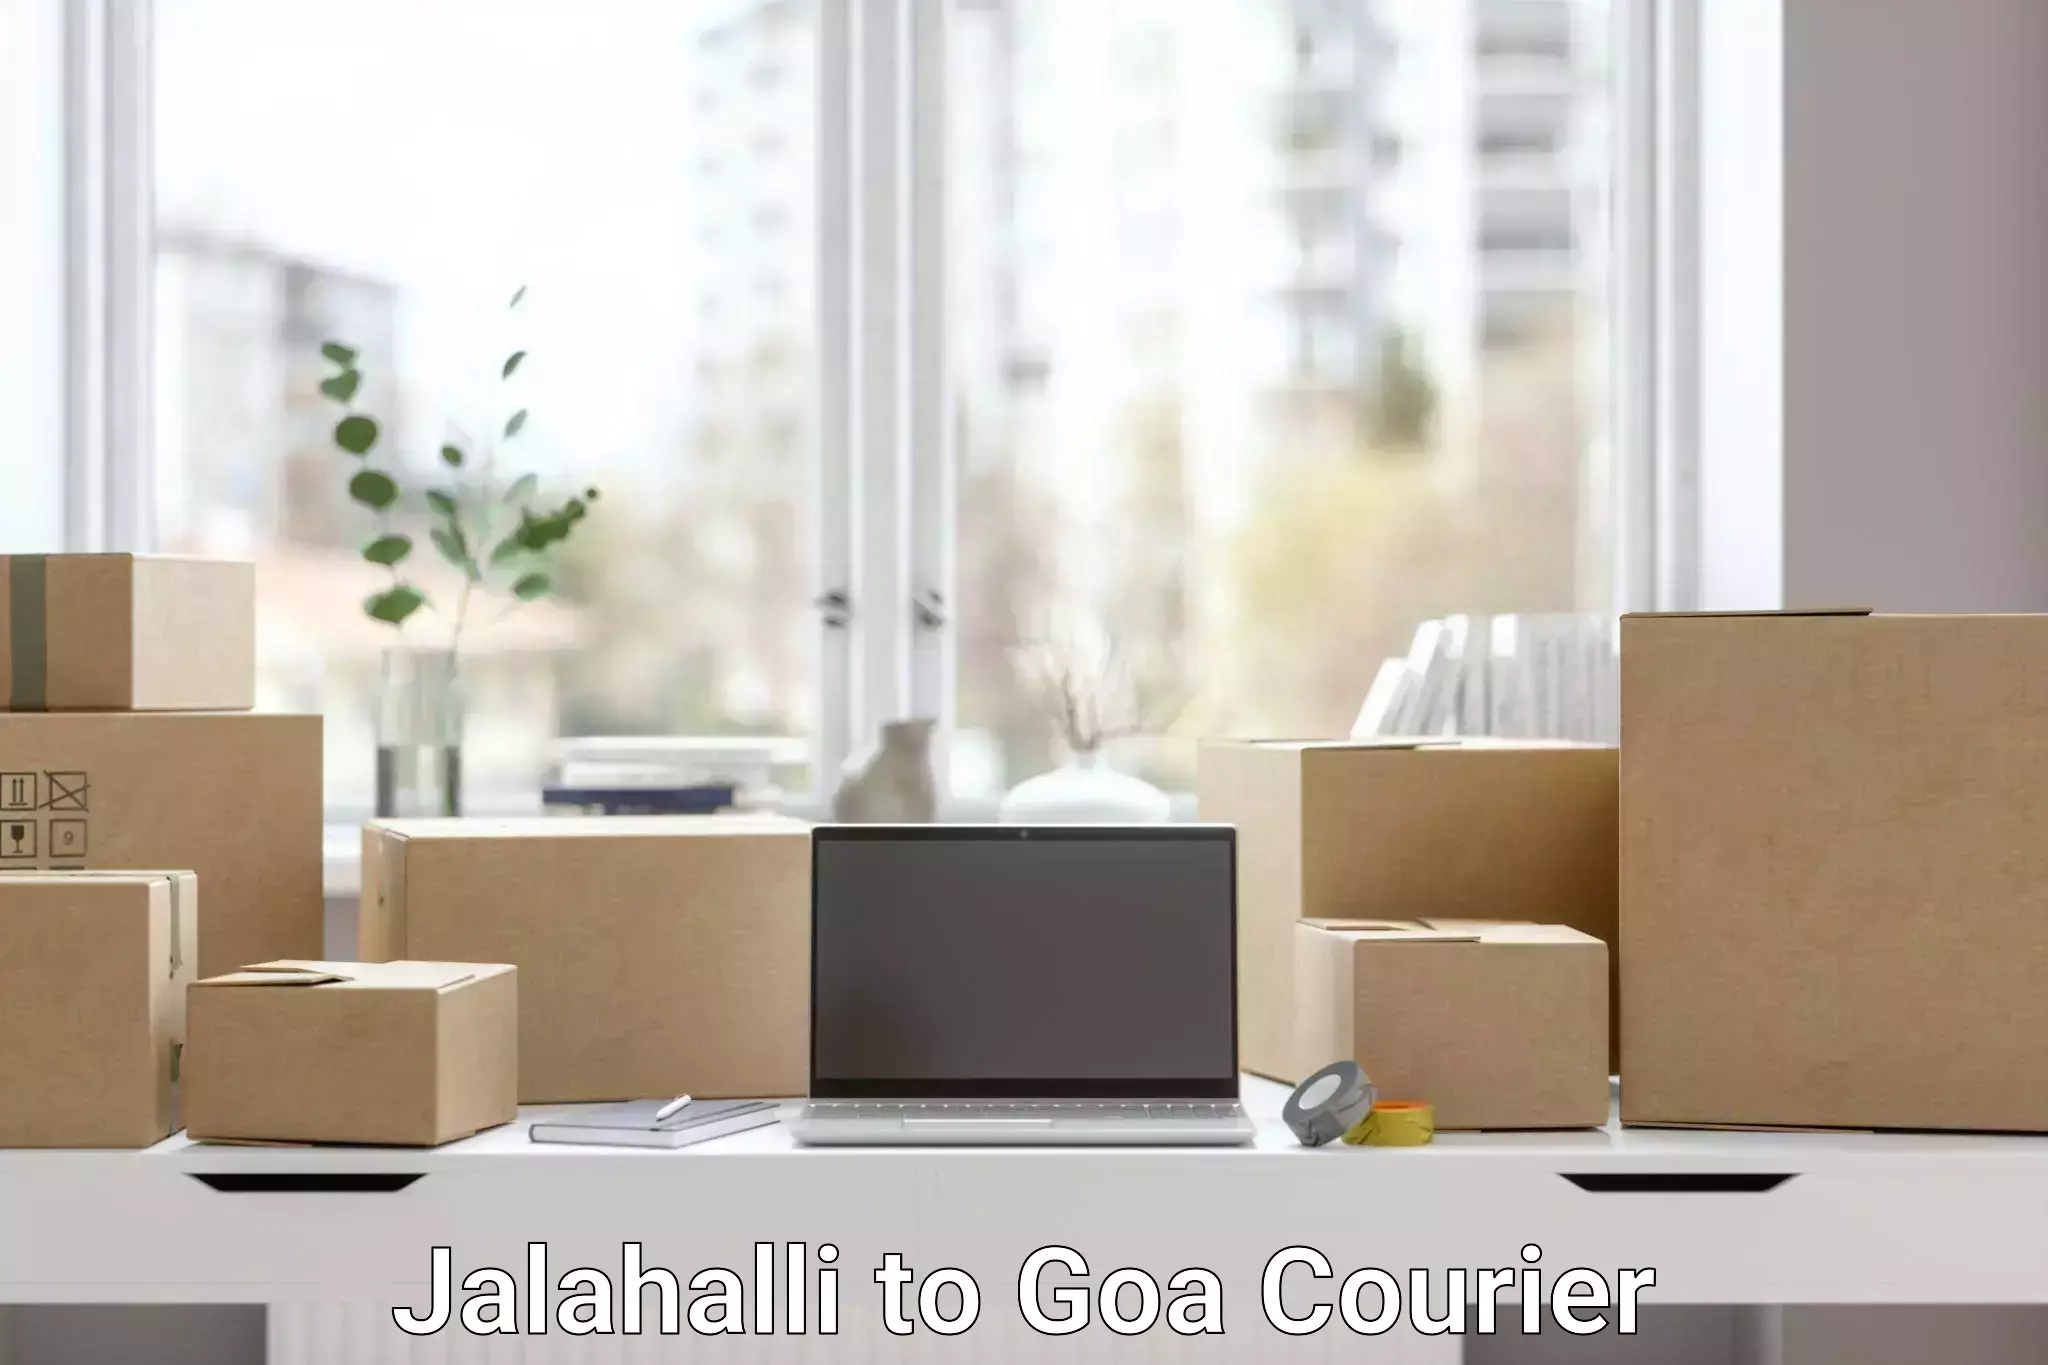 Reliable delivery network Jalahalli to Panaji